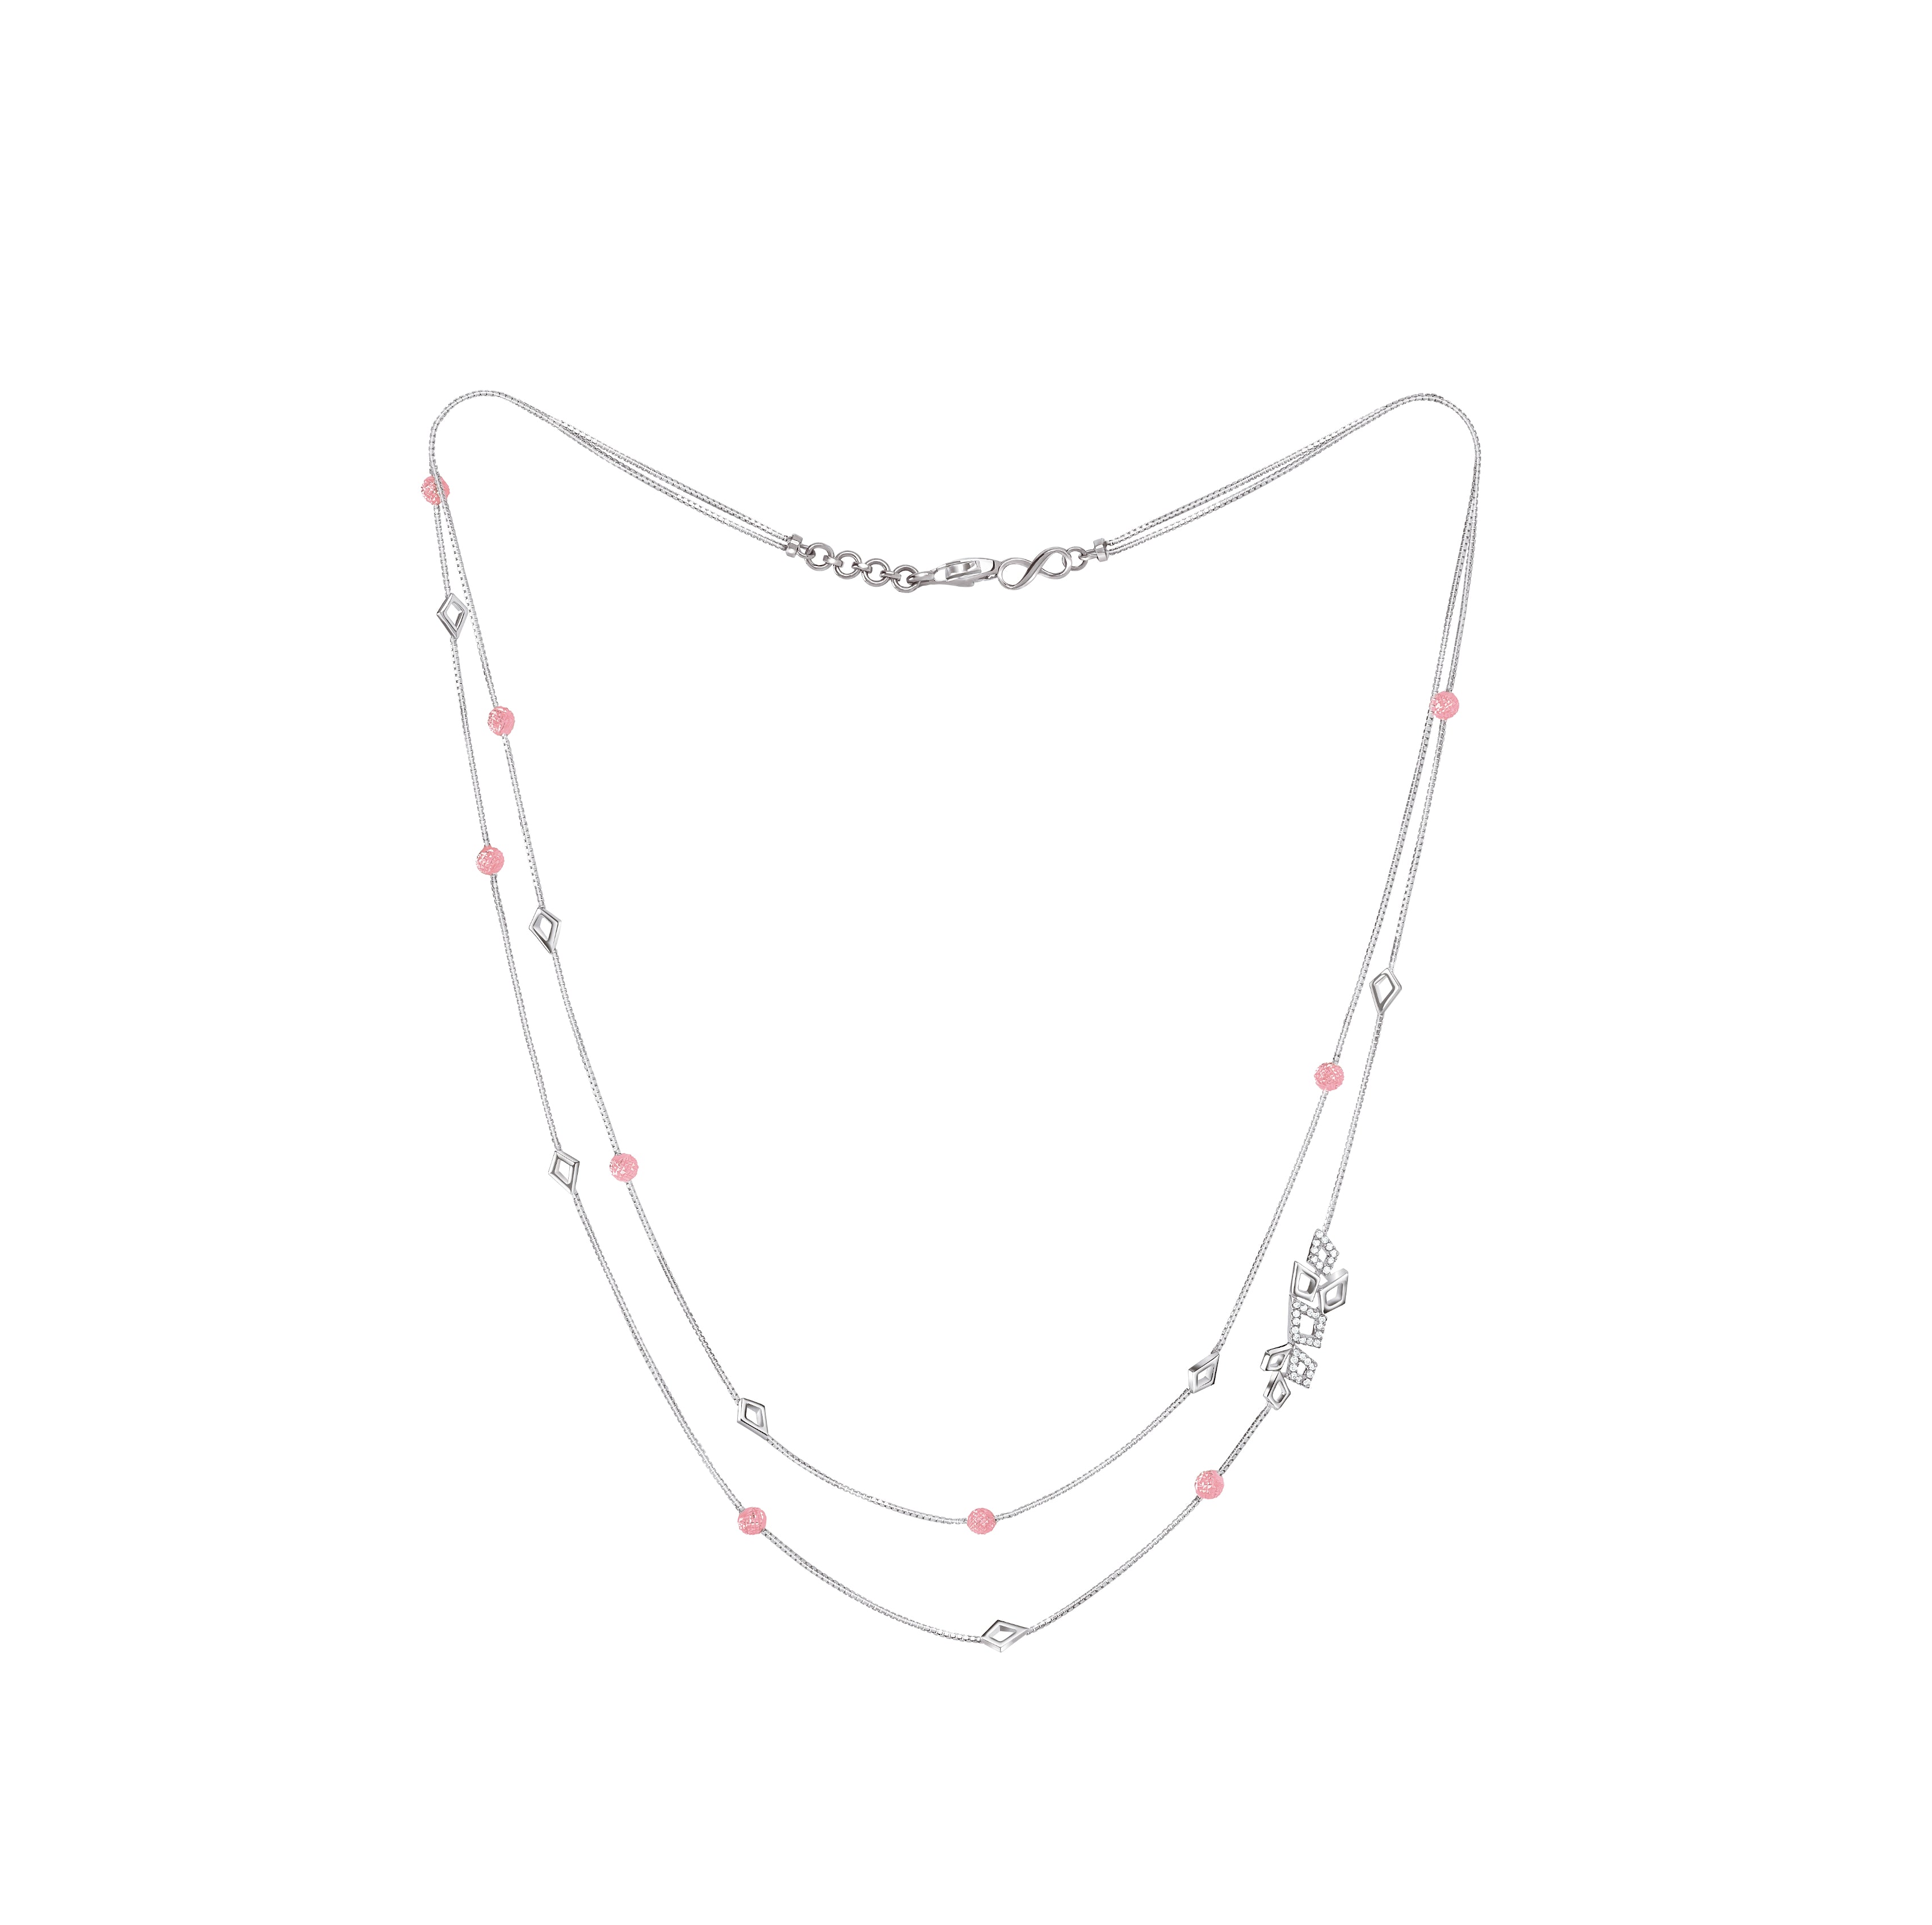 Buy Platinum Necklaces & Pendants for Women by VEMBLEY Online | Ajio.com